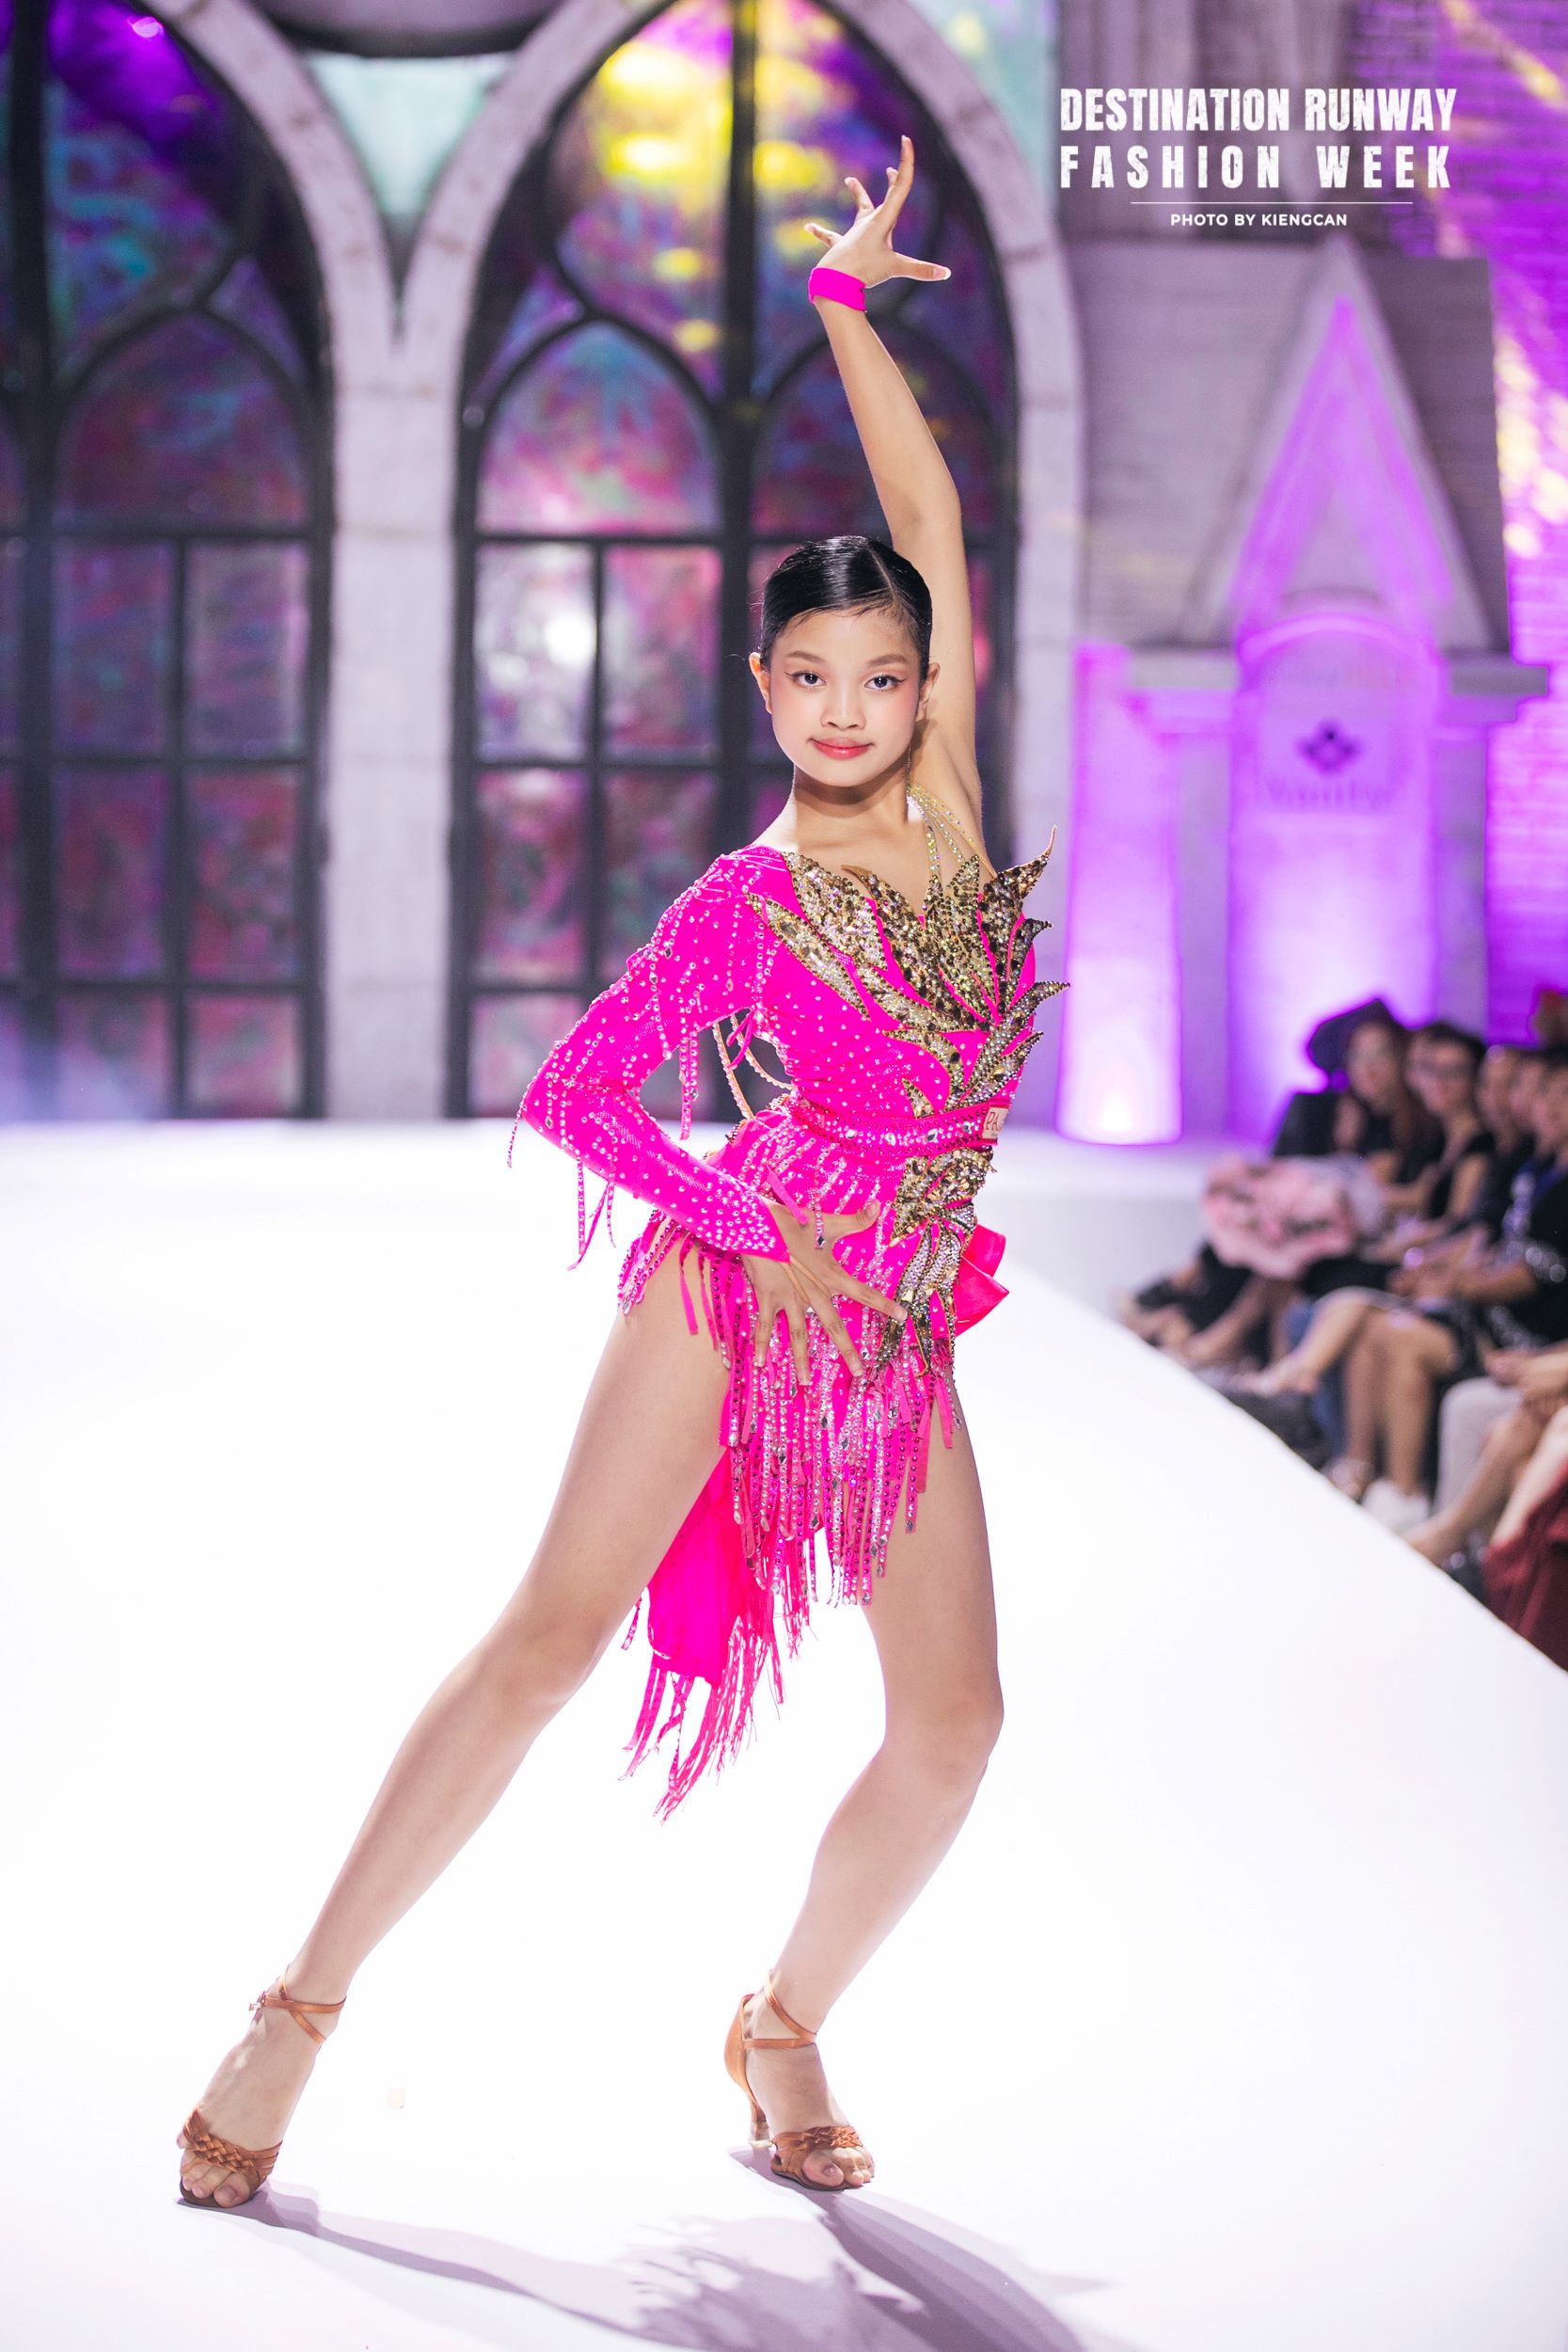 Mẫu nhí nhảy dancesport trên sàn runway gây sốt mạng xã hội - Ảnh 4.